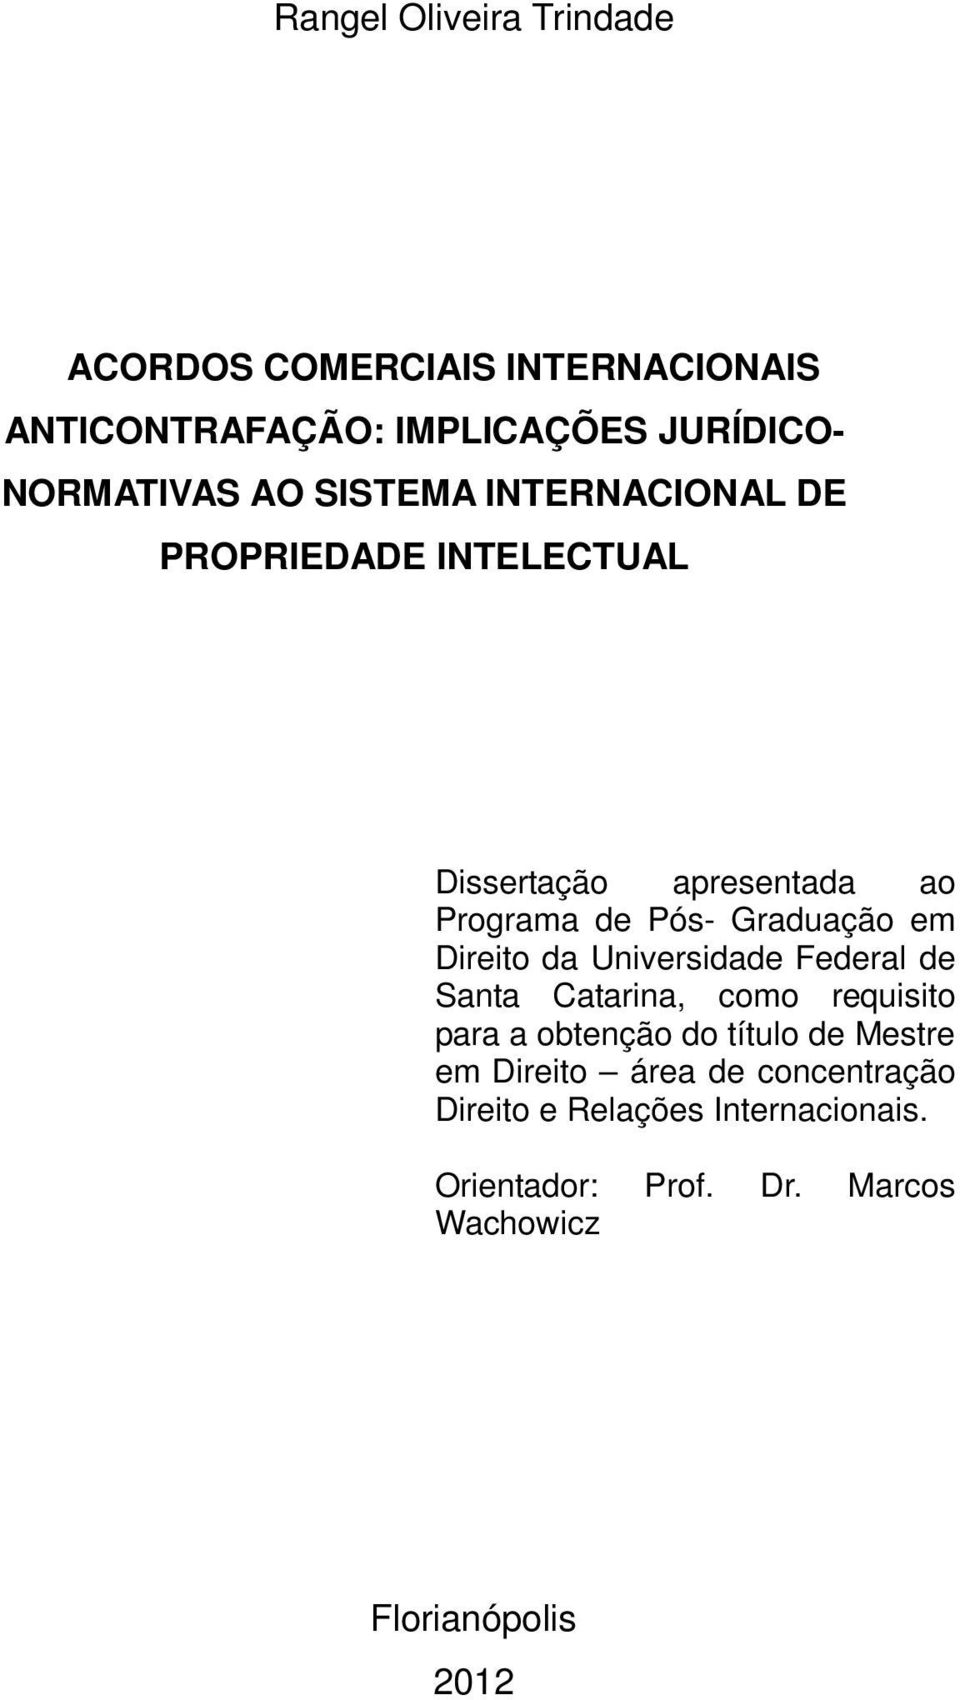 Direito da Universidade Federal de Santa Catarina, como requisito para a obtenção do título de Mestre em